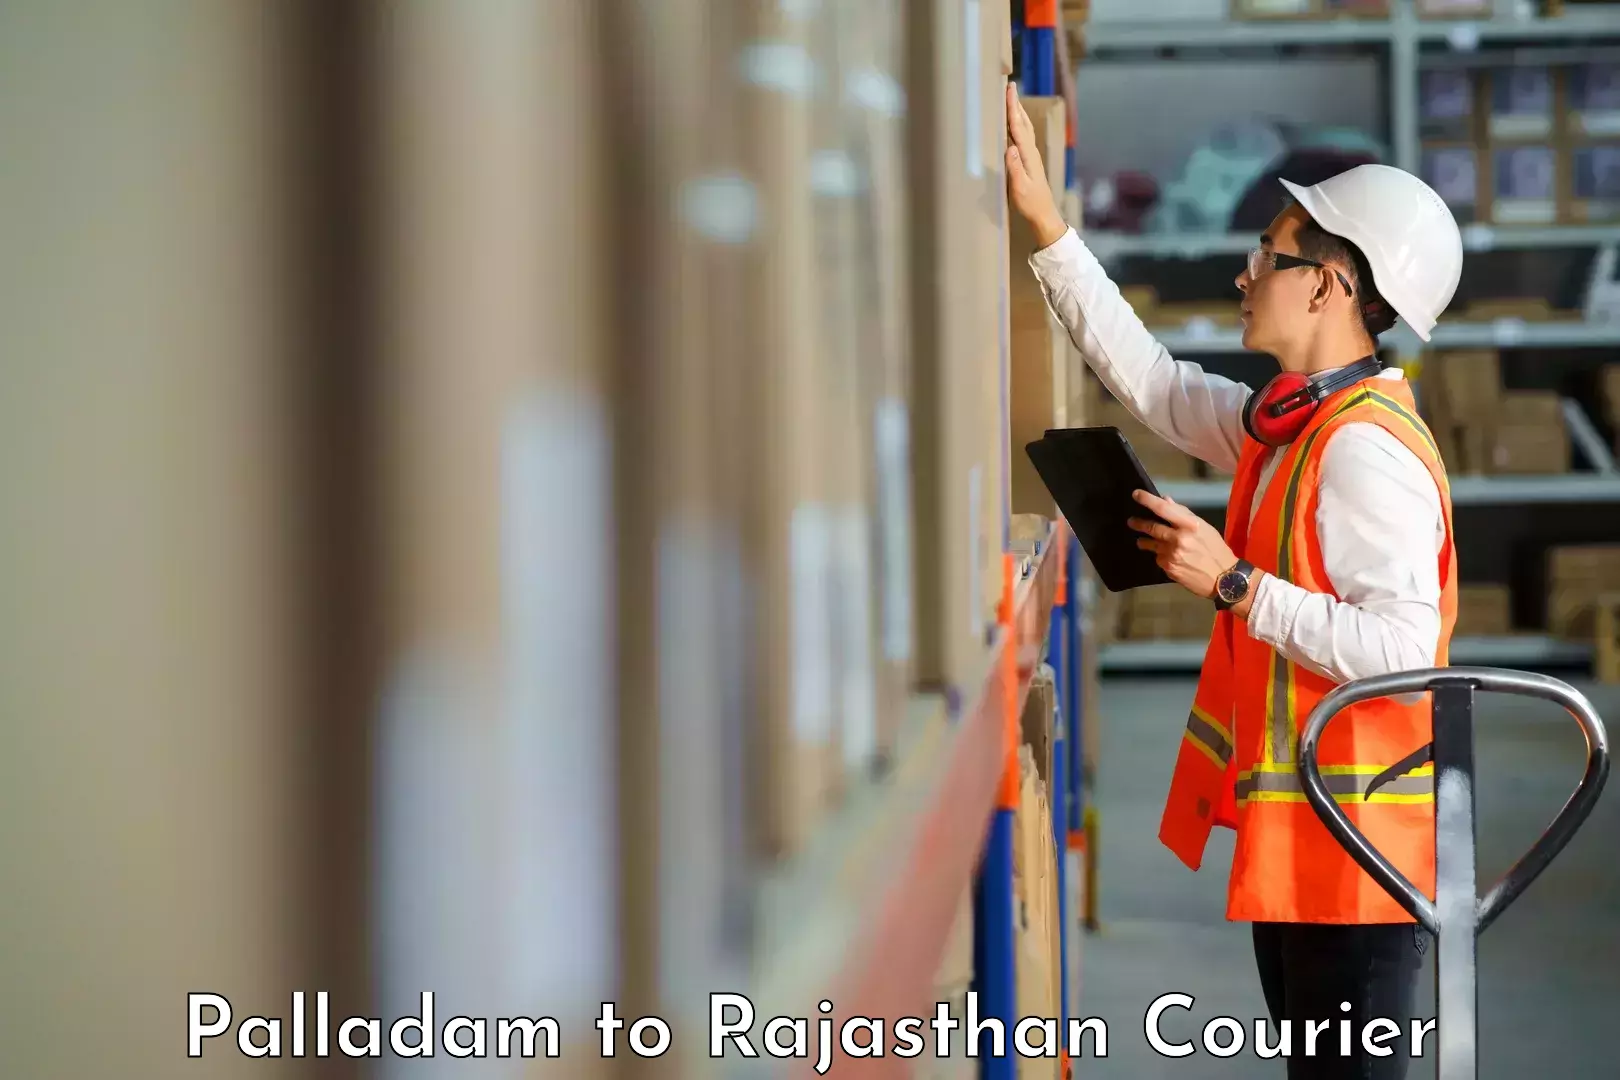 Courier service comparison Palladam to Rajasthan